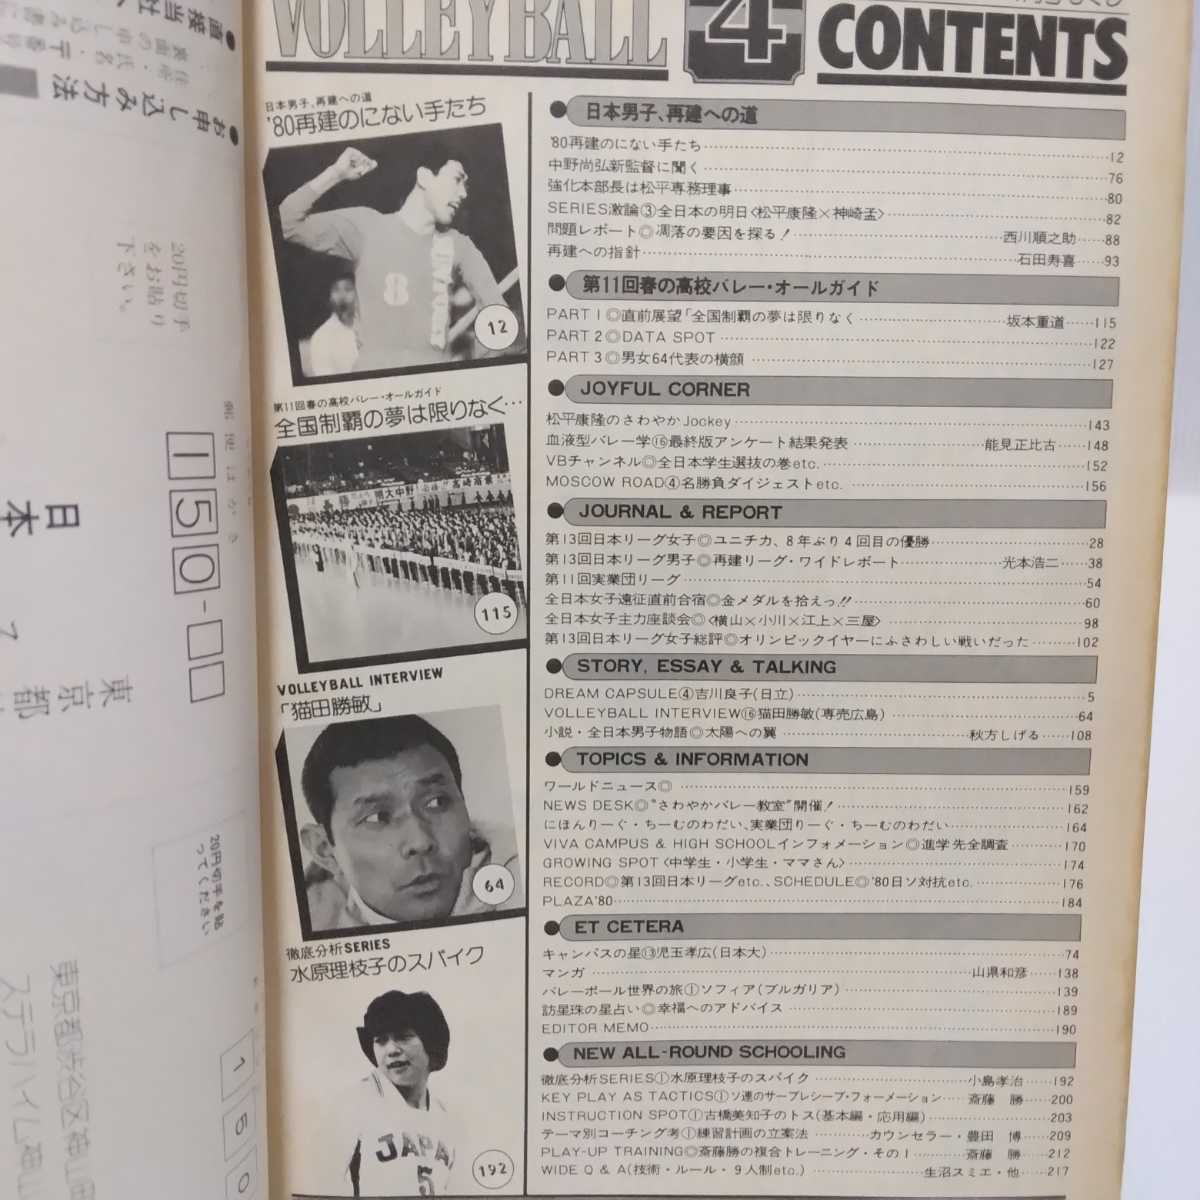 月刊バレーボール 1980.4 日本男子、再建への道/第11回春の高校バレー/第13回日本リーグの画像2